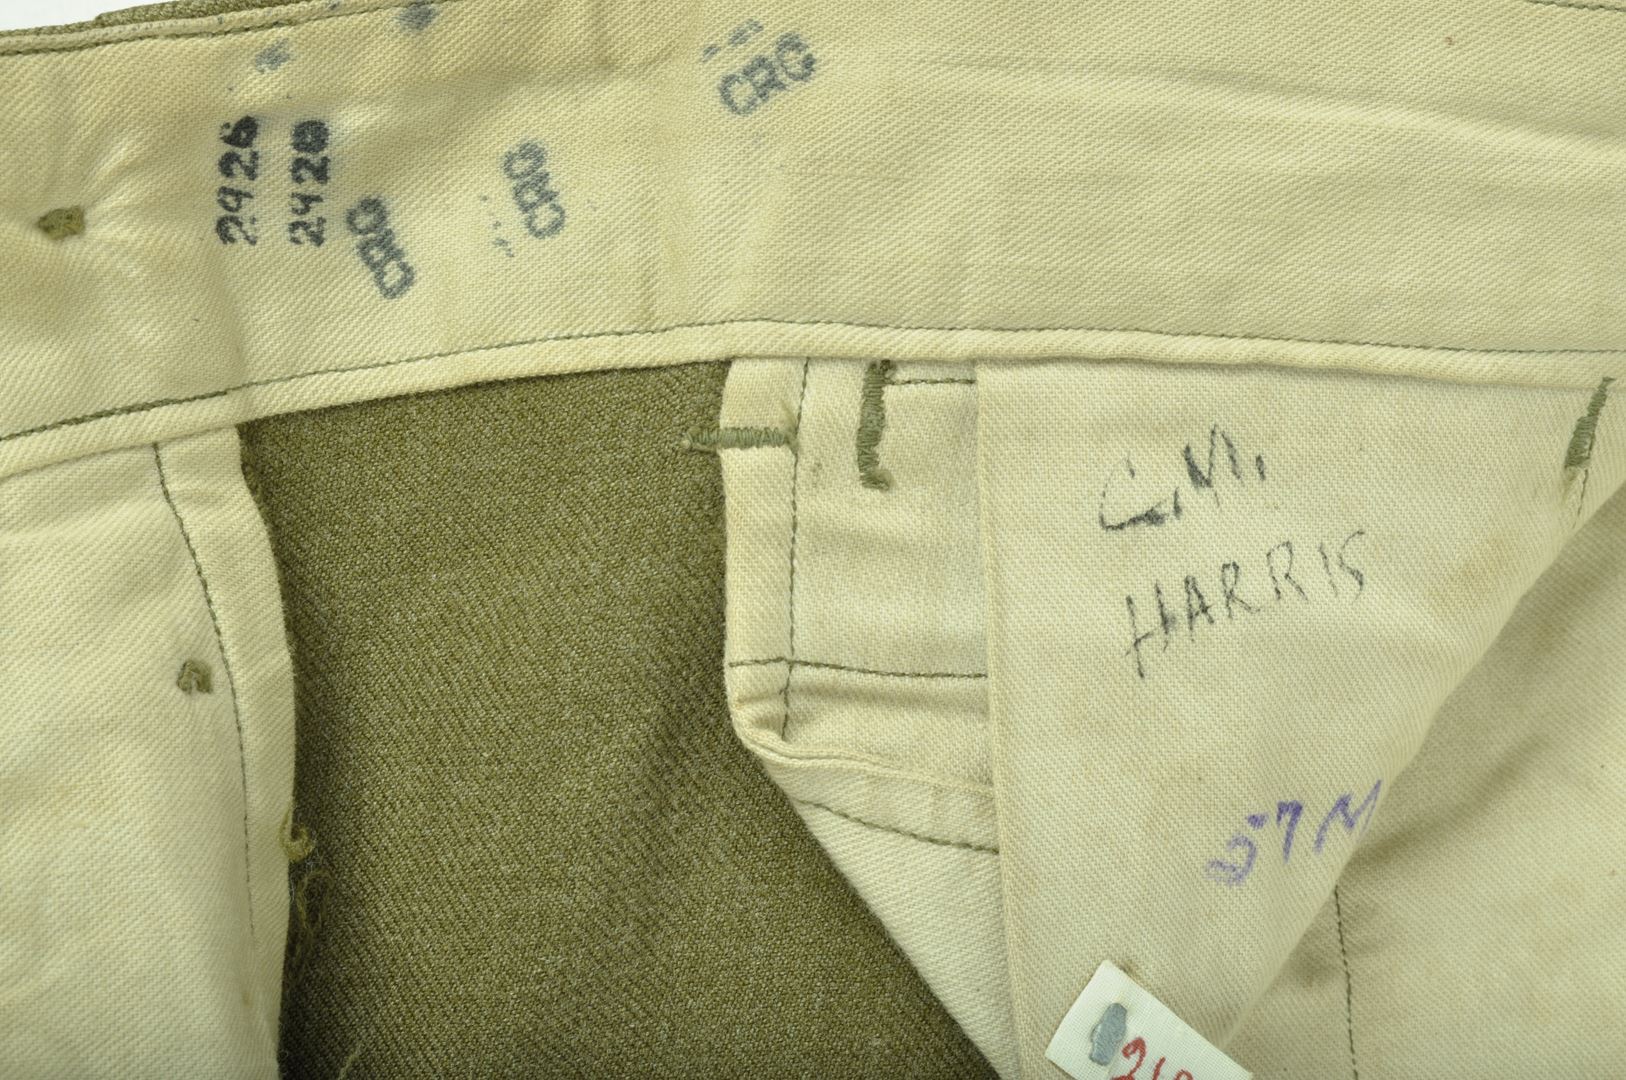 Pantalon moutarde  Nominatif / daté 1940